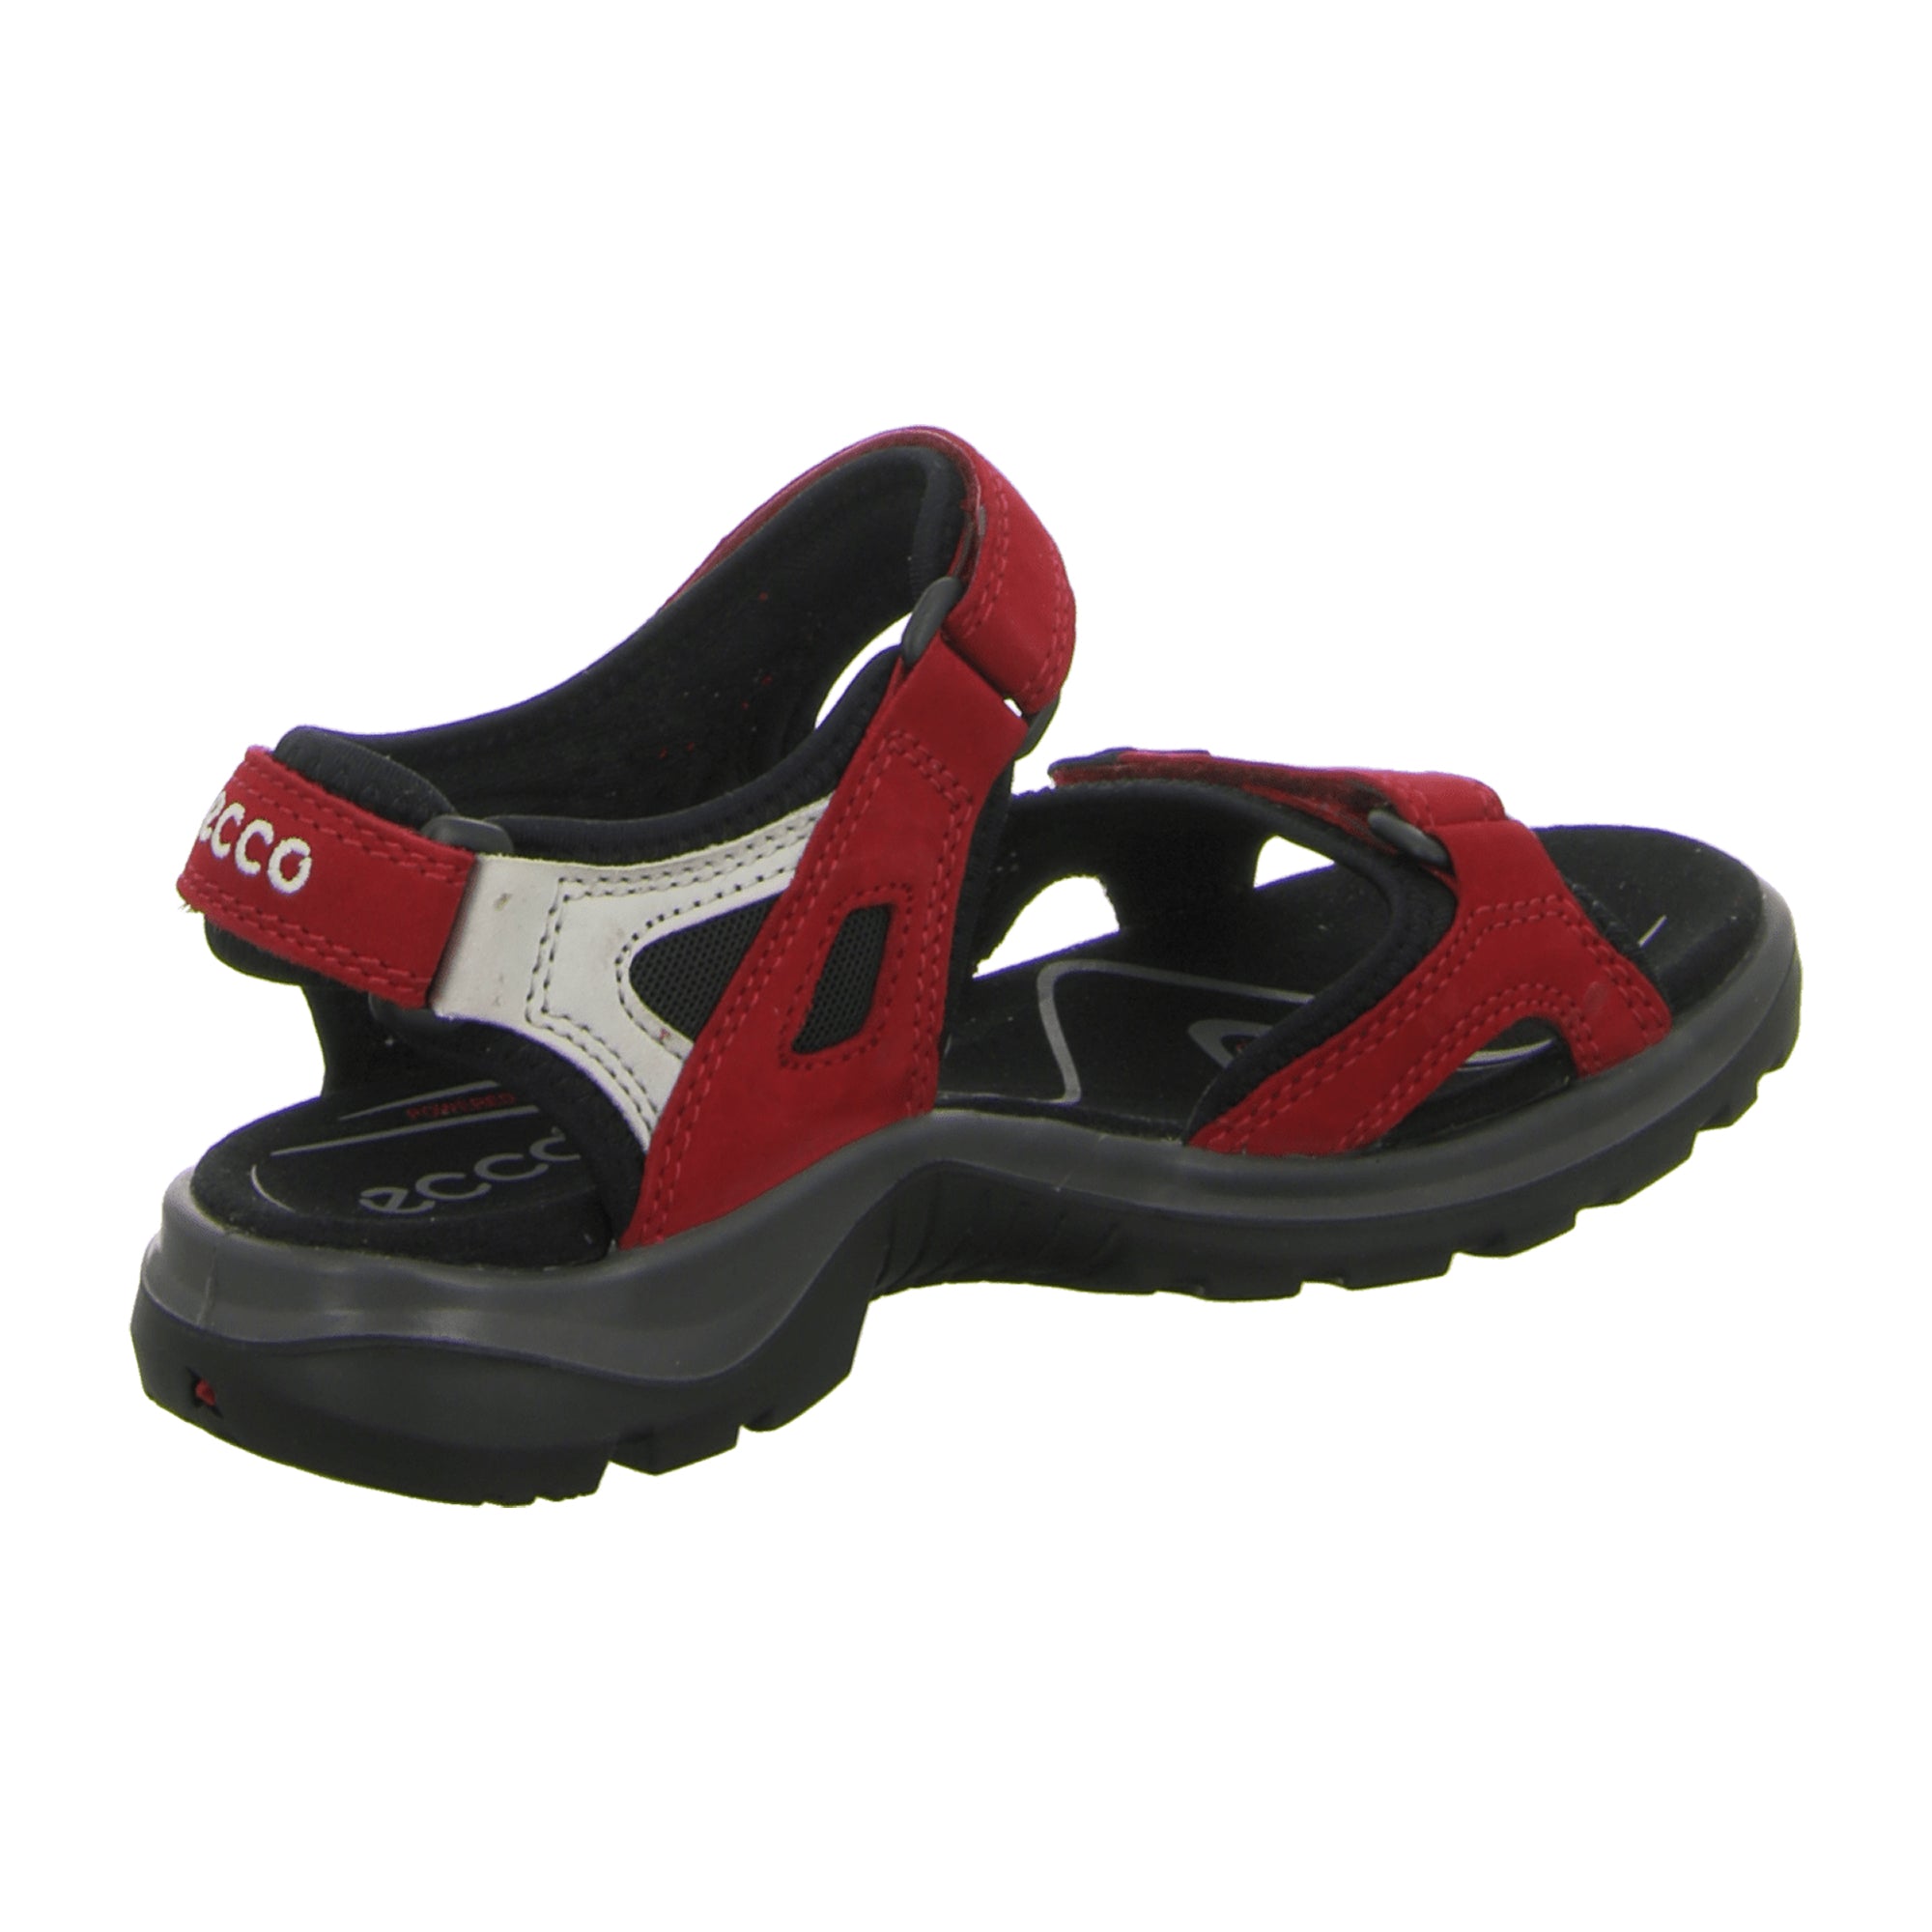 Ecco OFFROAD Women's Adventure Sandals, Red